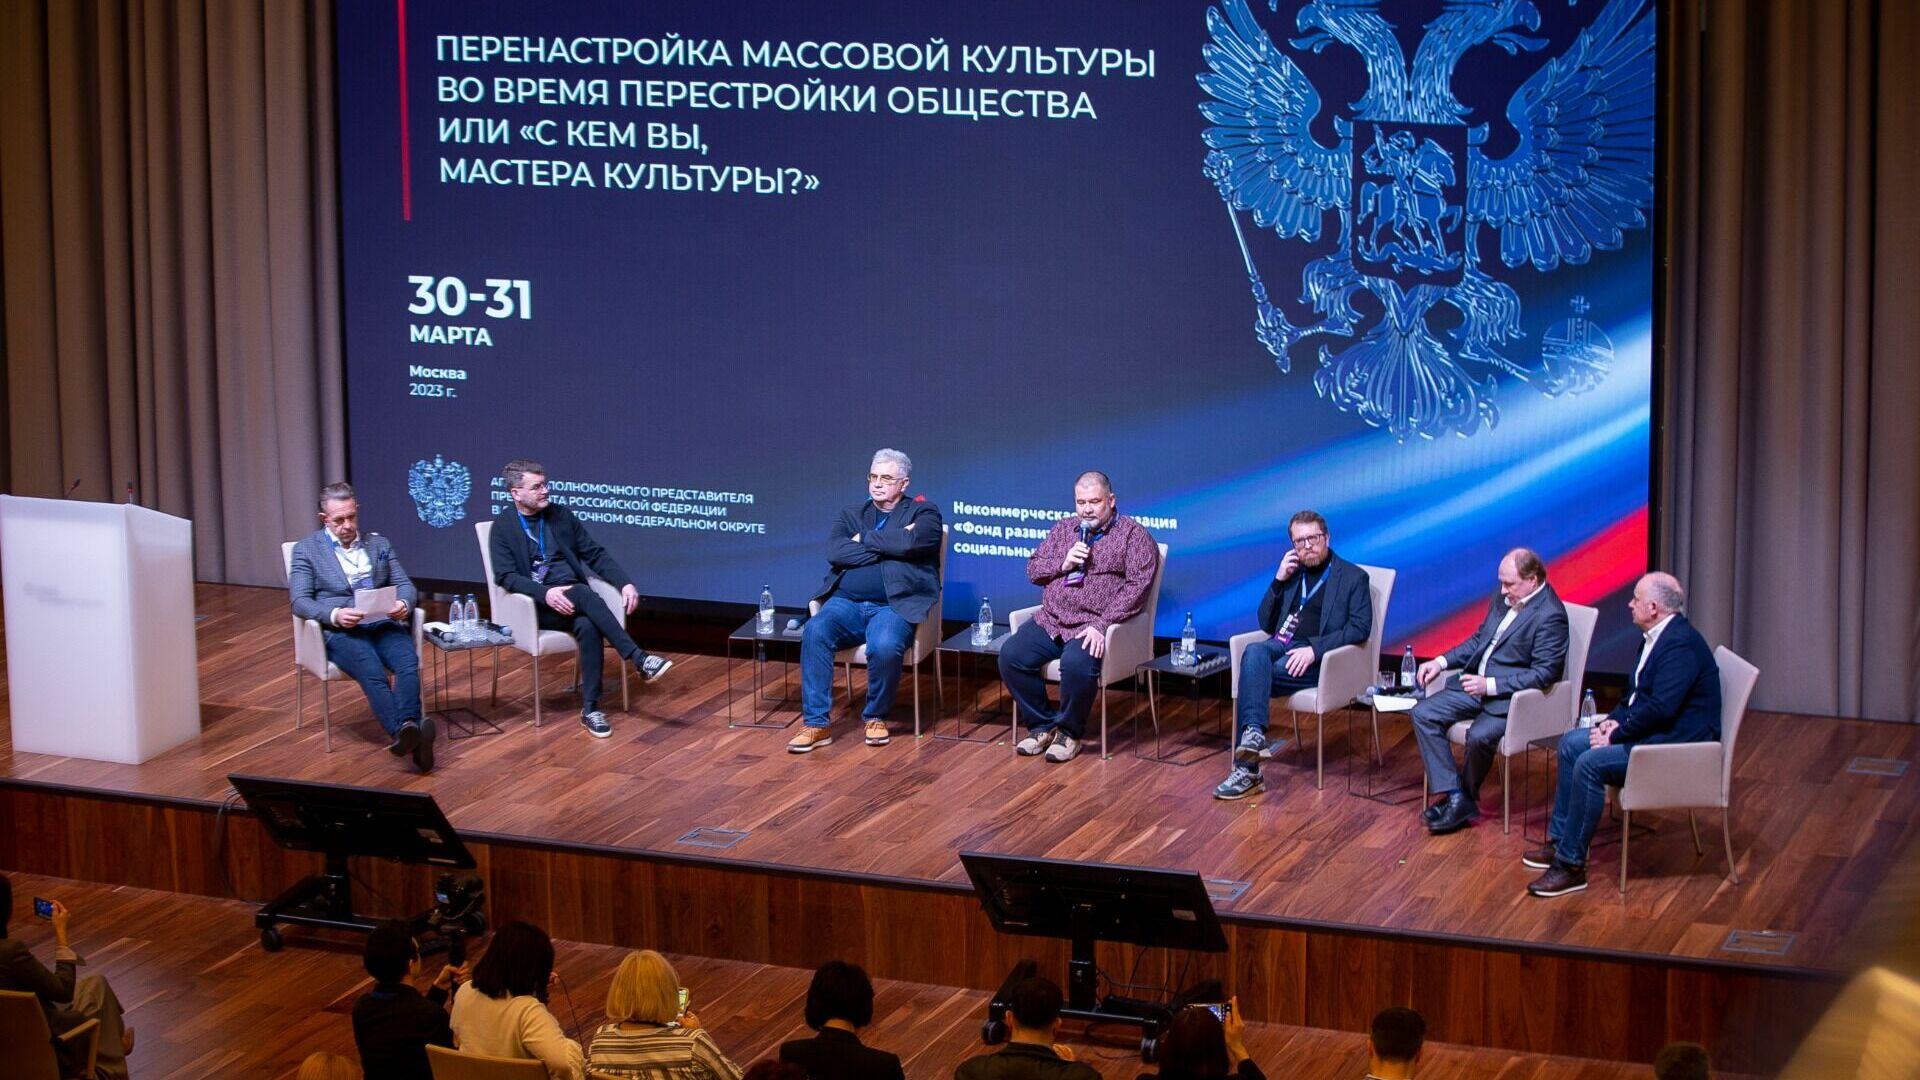 «С кем вы, мастера культуры?» — выясняли участники окружного семинара в Москве